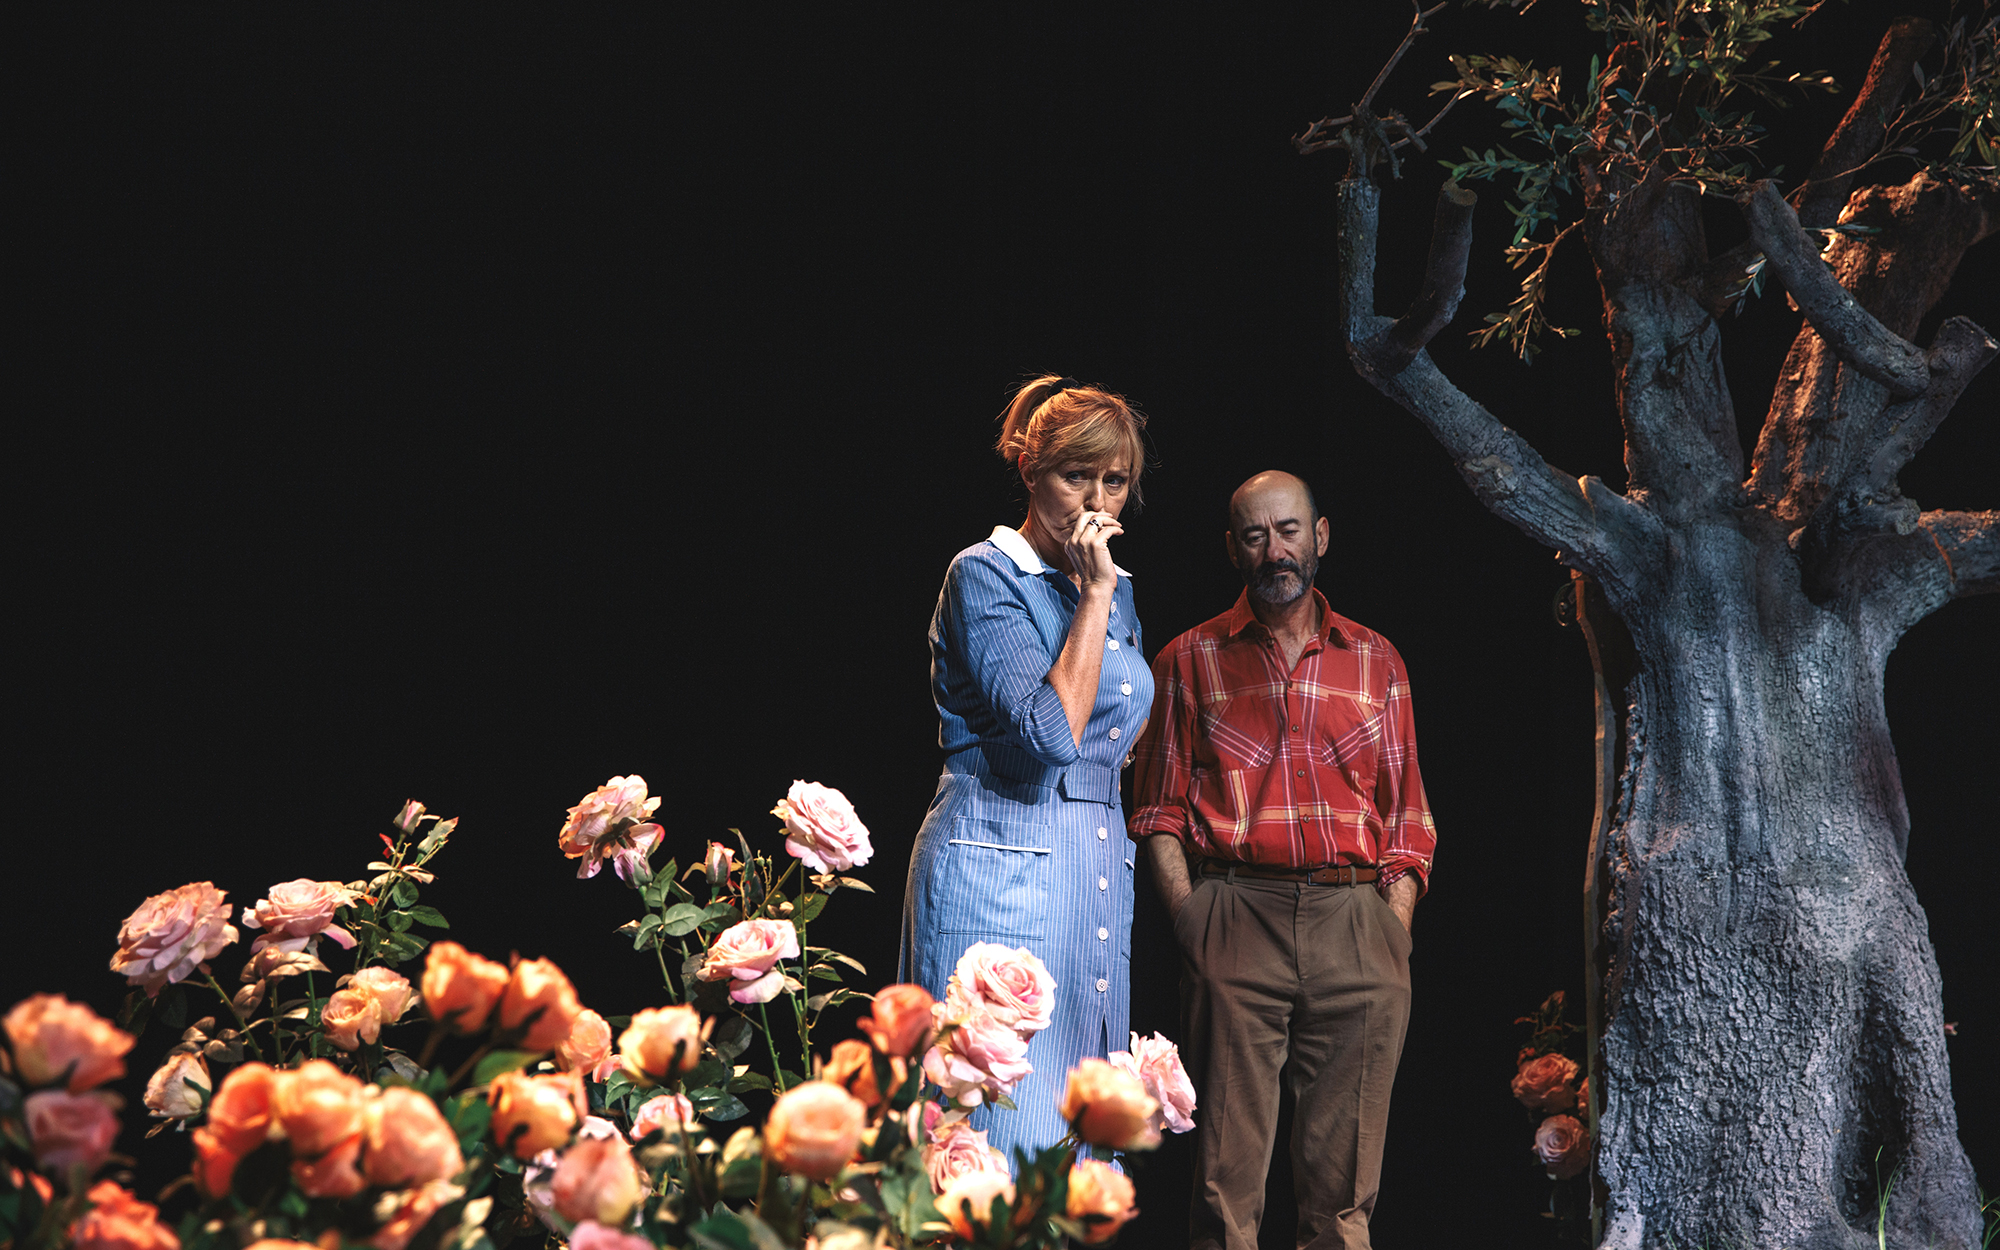 Fran (Judita Zidar) in Bob (Boris Ostan) stojita na vrtu in vsak zase zamišljeno gledata predse. Ob njej so cvetoče vrtnice, ob njem golo drevo. Avtor fotografije: Peter Giodani.